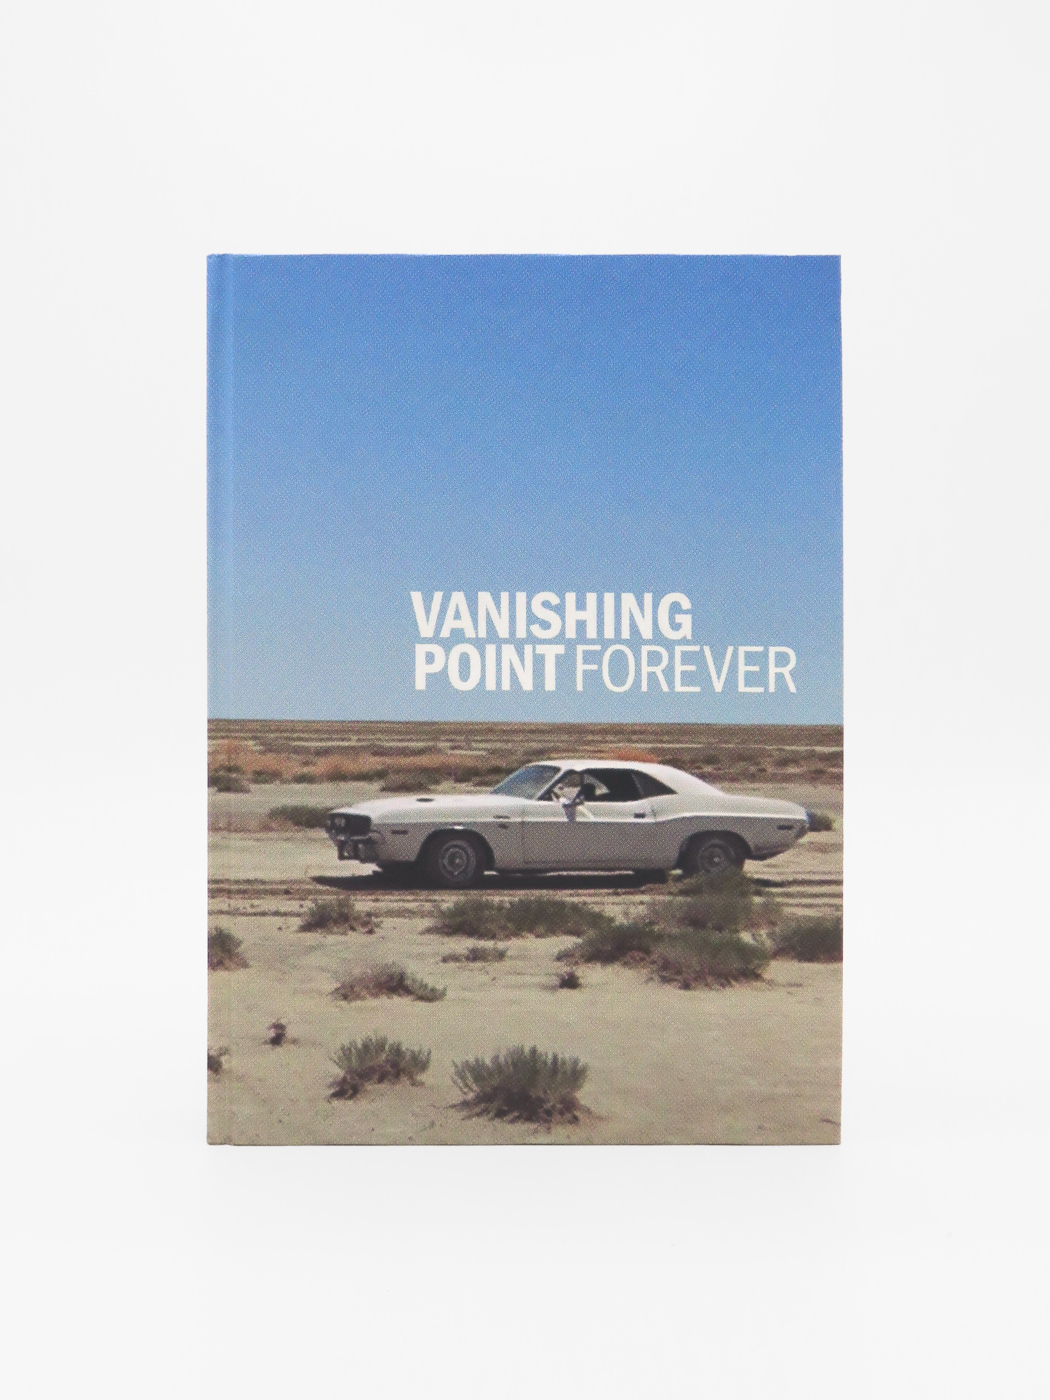 Robert M. Rubin, Vanishing Point Forever